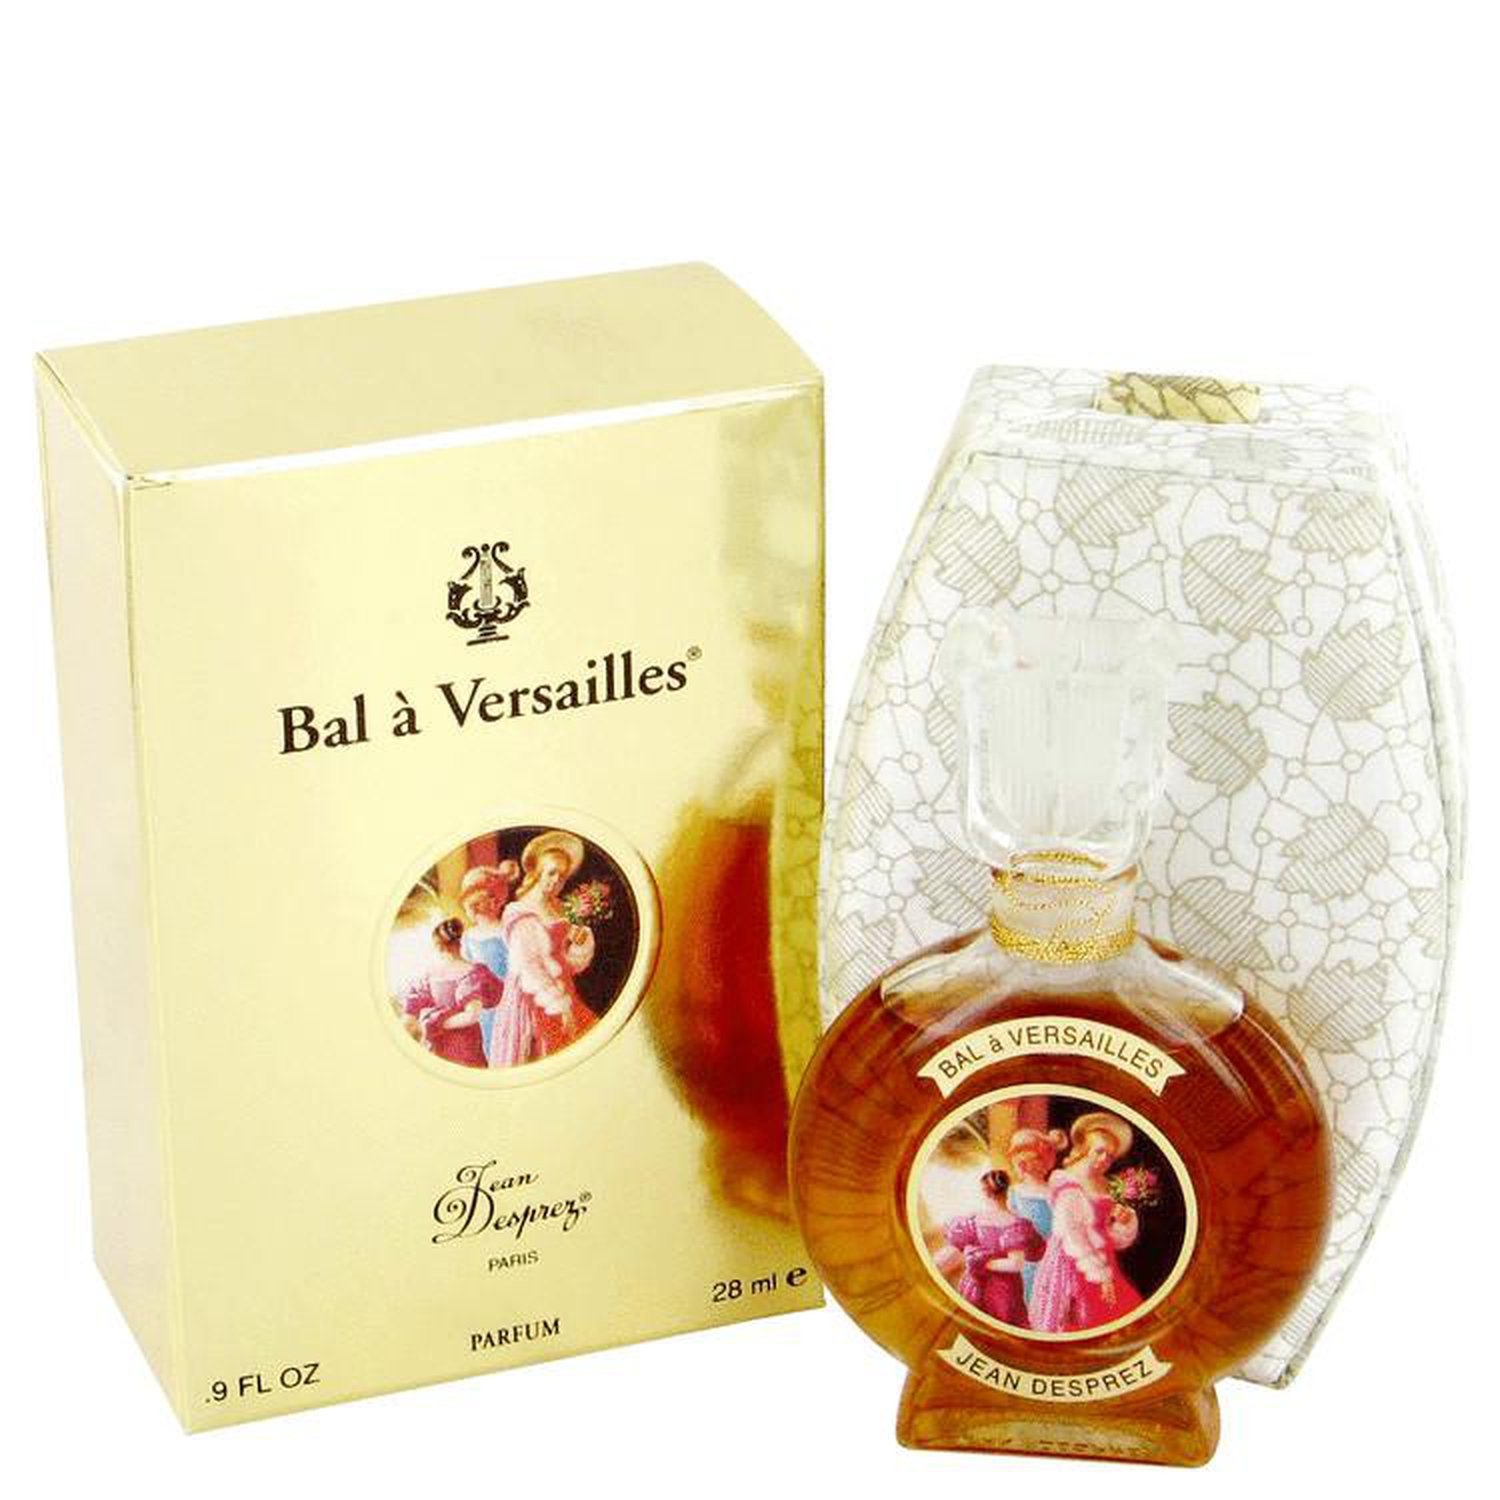 BAL A VERSAILLES by Jean Desprez Pure Perfume 1 oz (30 ml) (Women)